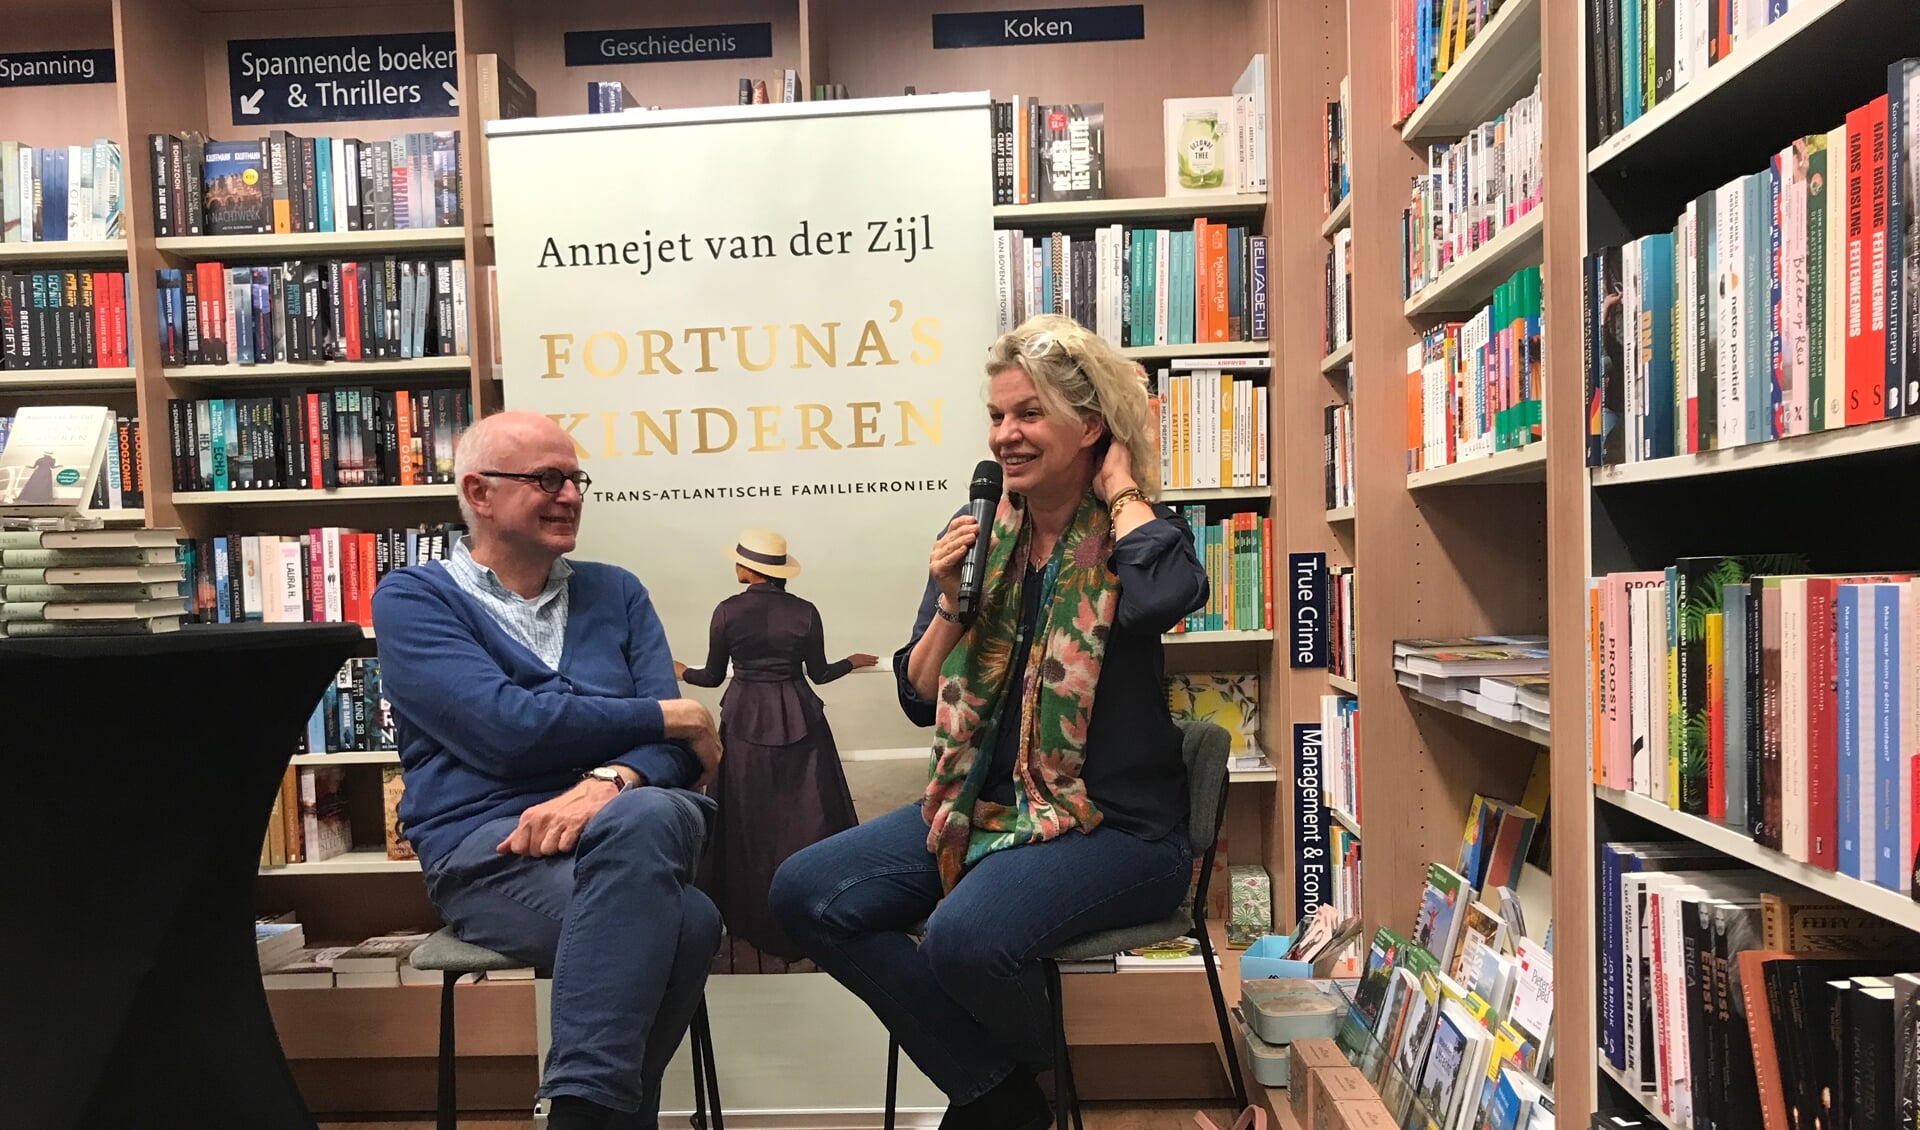 Interview met landelijk bekende schrijfster Annejet van der Zijl bij boekhandel van Ravenswaaij Bunnik.